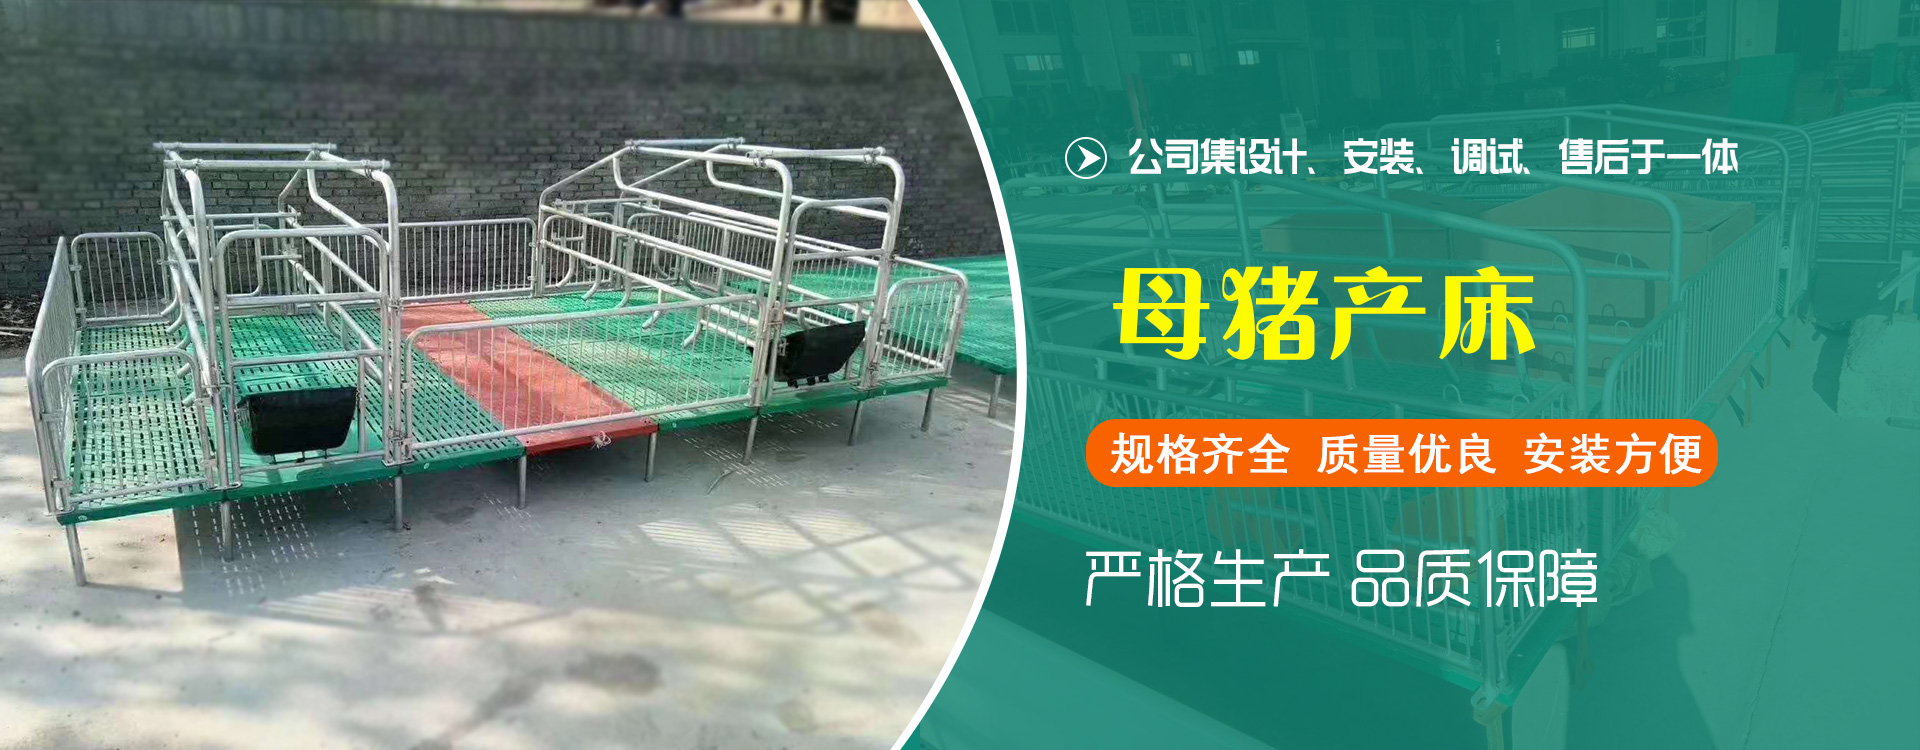 沧州嘉信养猪设备有限公司